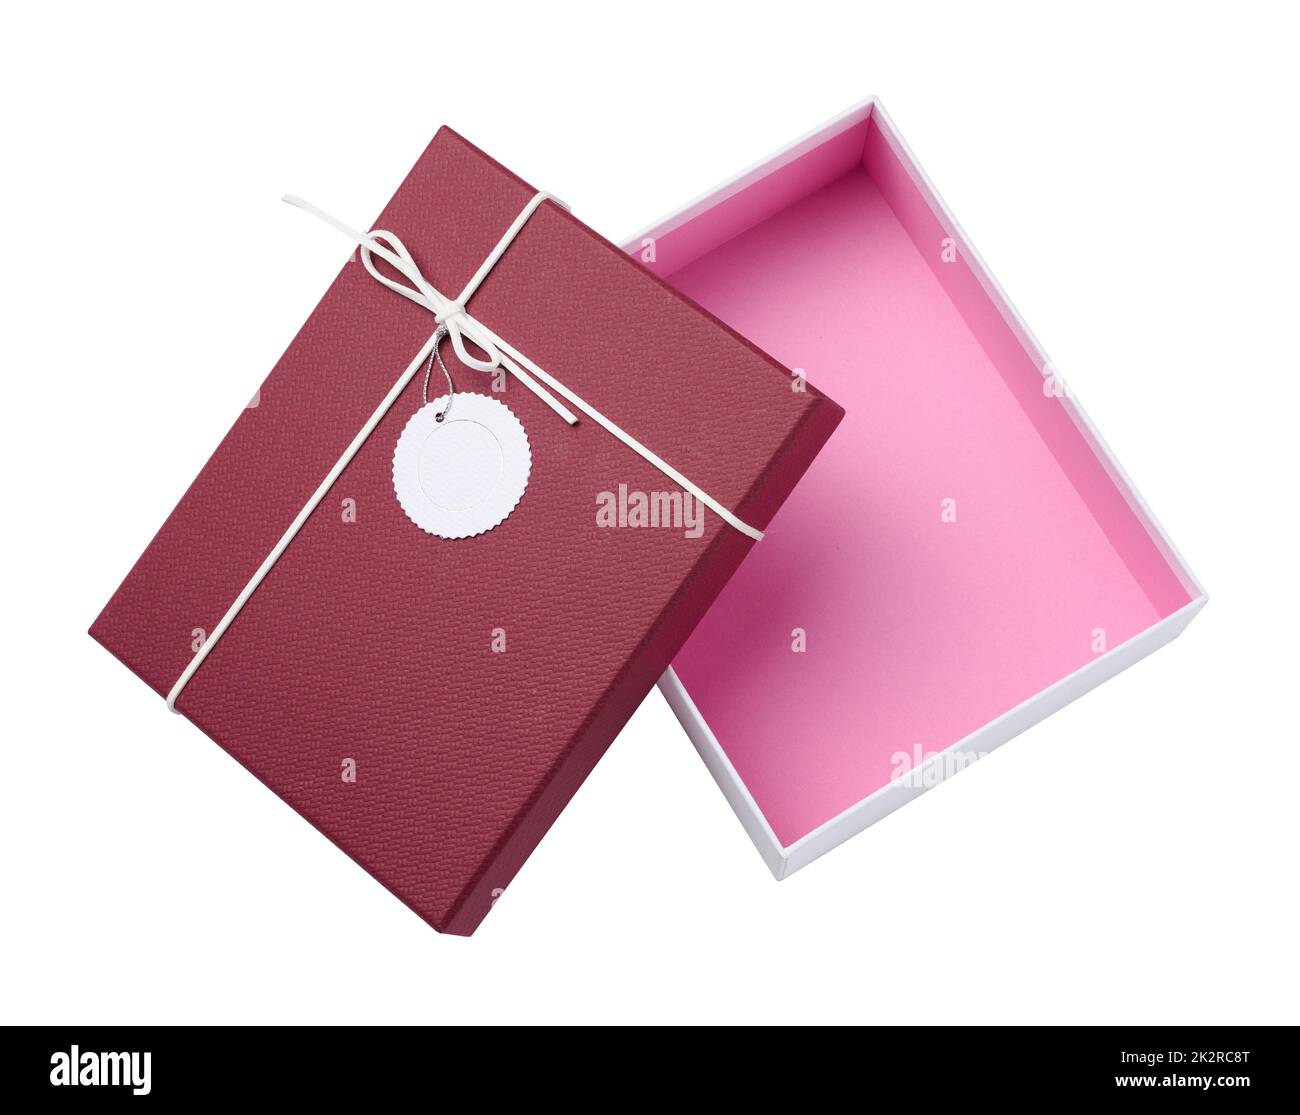 Rechteckige weiße Kartonschachtel mit rotem Deckel für Geschenkverpackung isoliert auf weißem Hintergrund Stockfoto